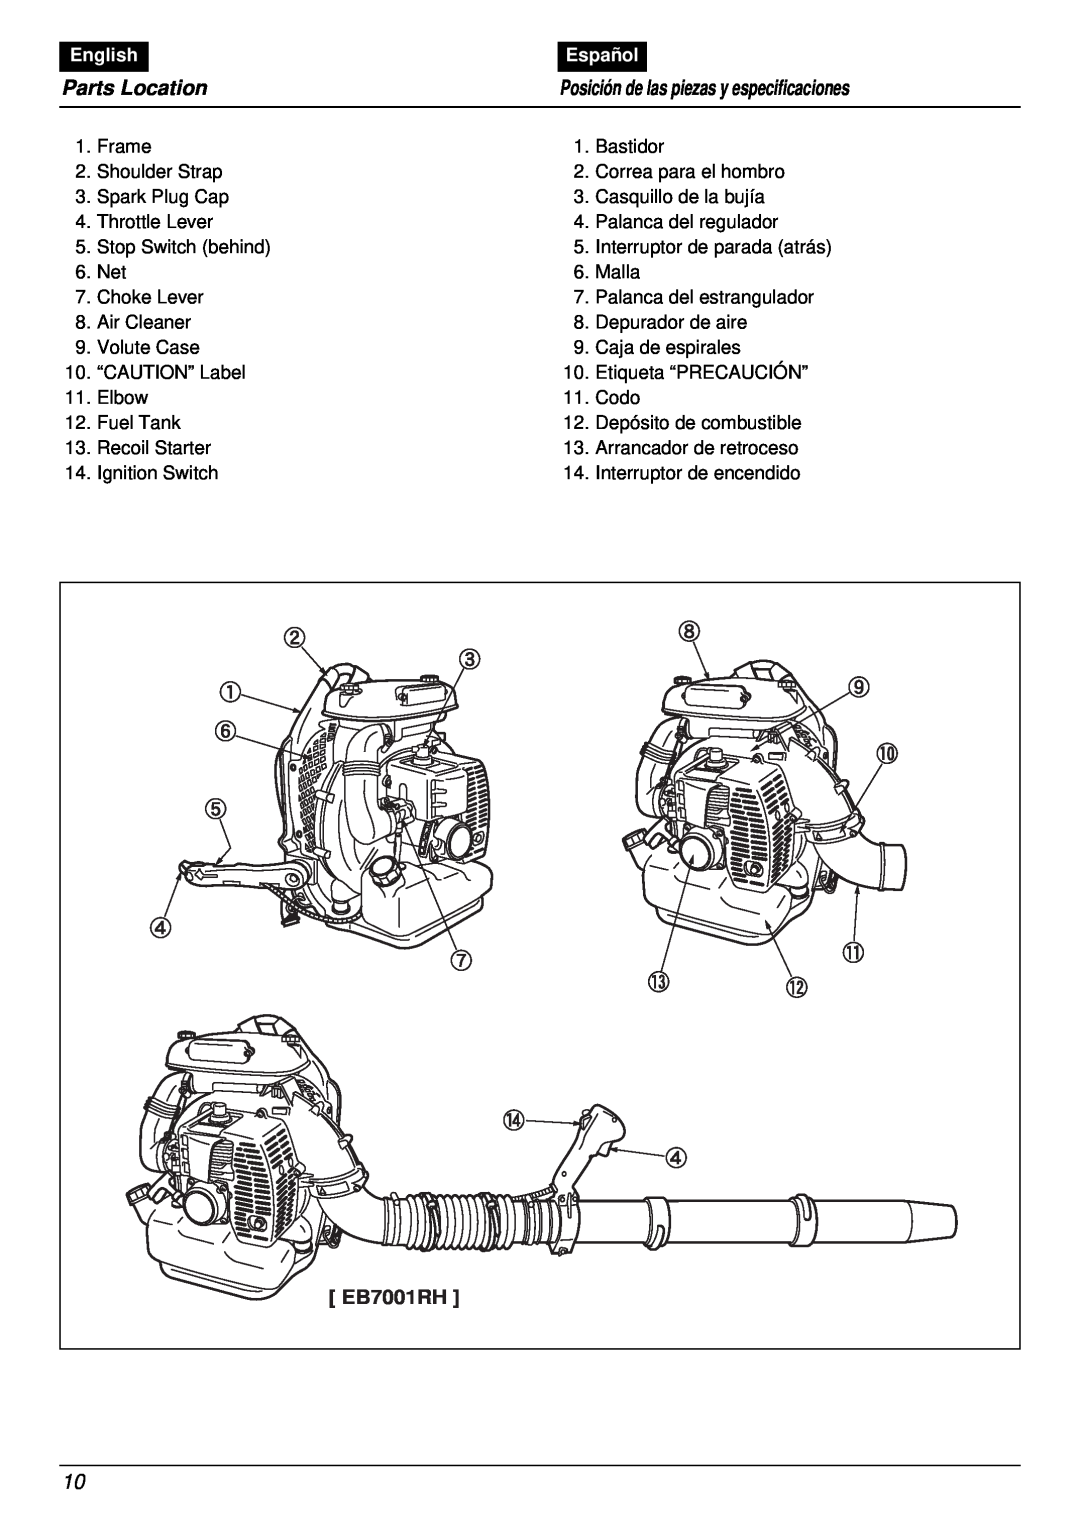 RedMax EB7001RH manual Parts Location, Posición de las piezas y especificaciones, English, Español 